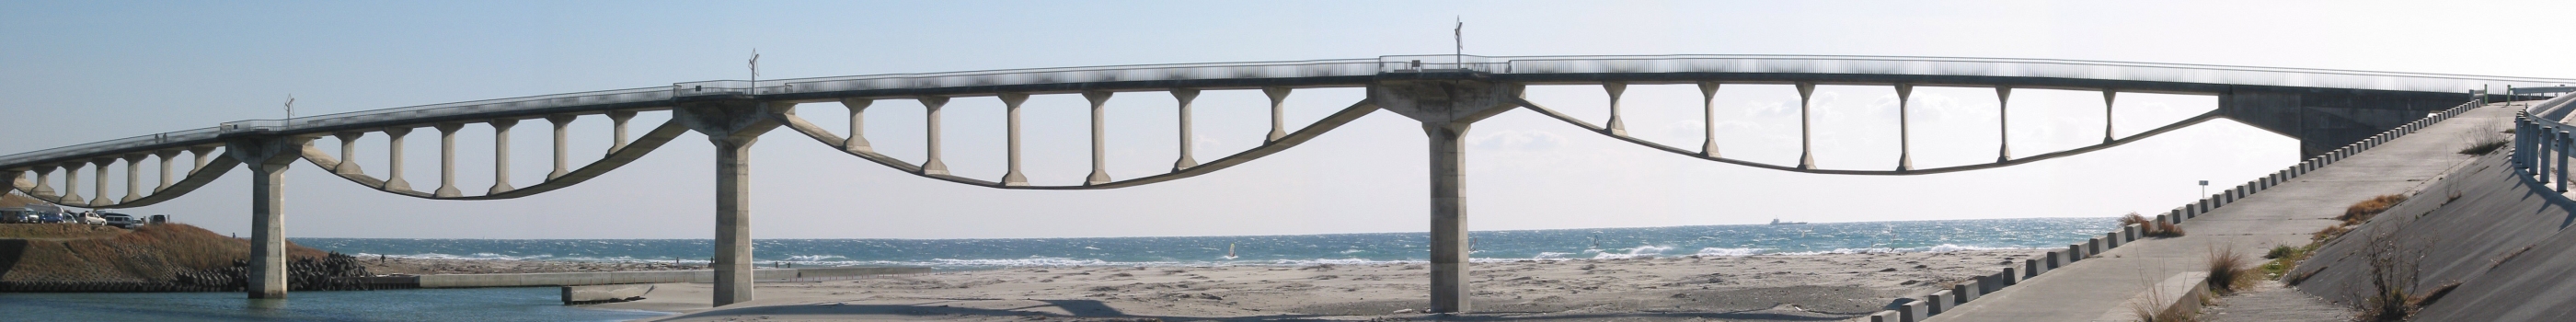 Shiosai-Brücke